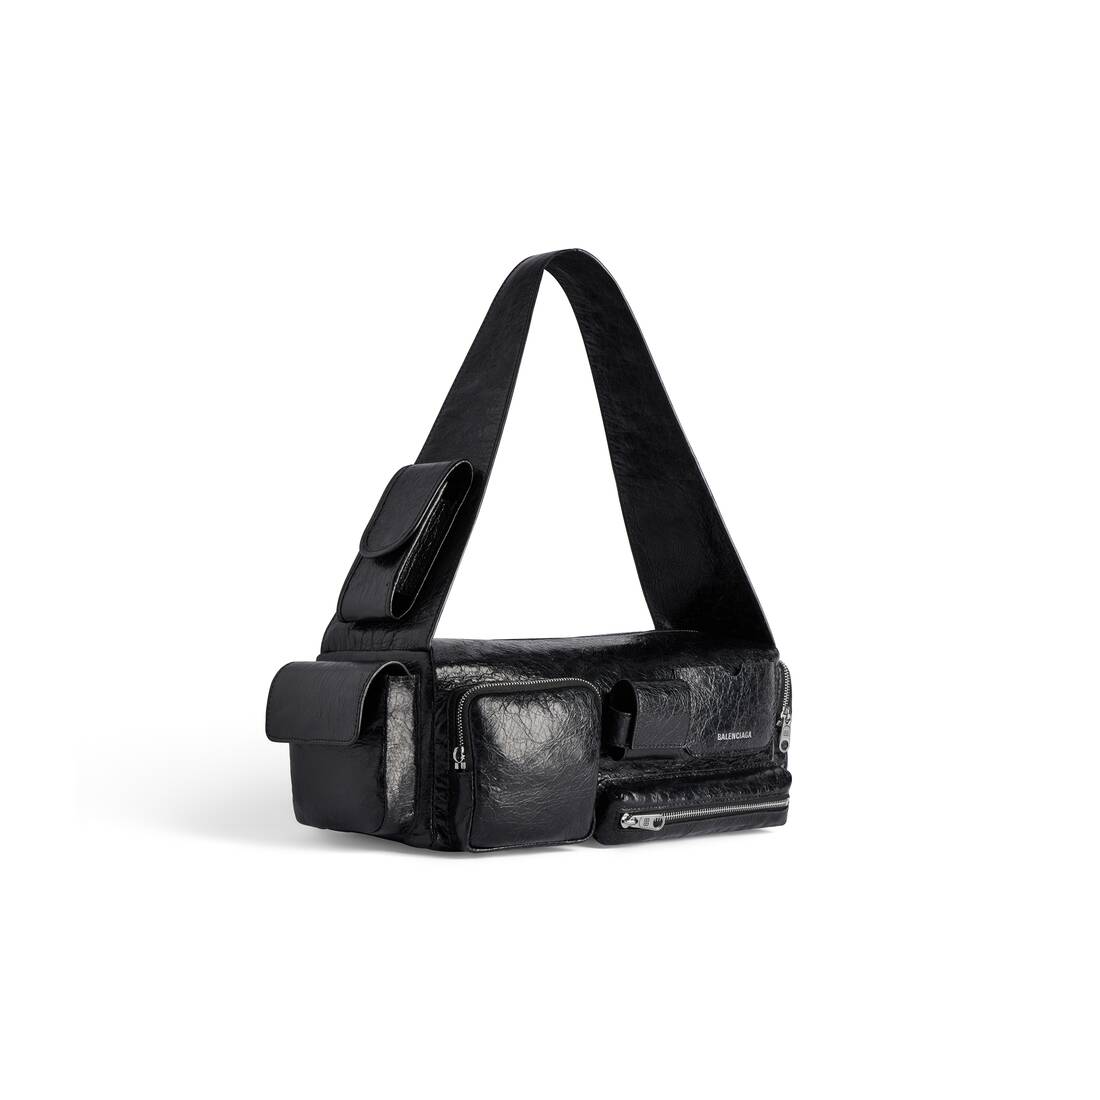 Men's Superbusy Small Sling Bag in Black